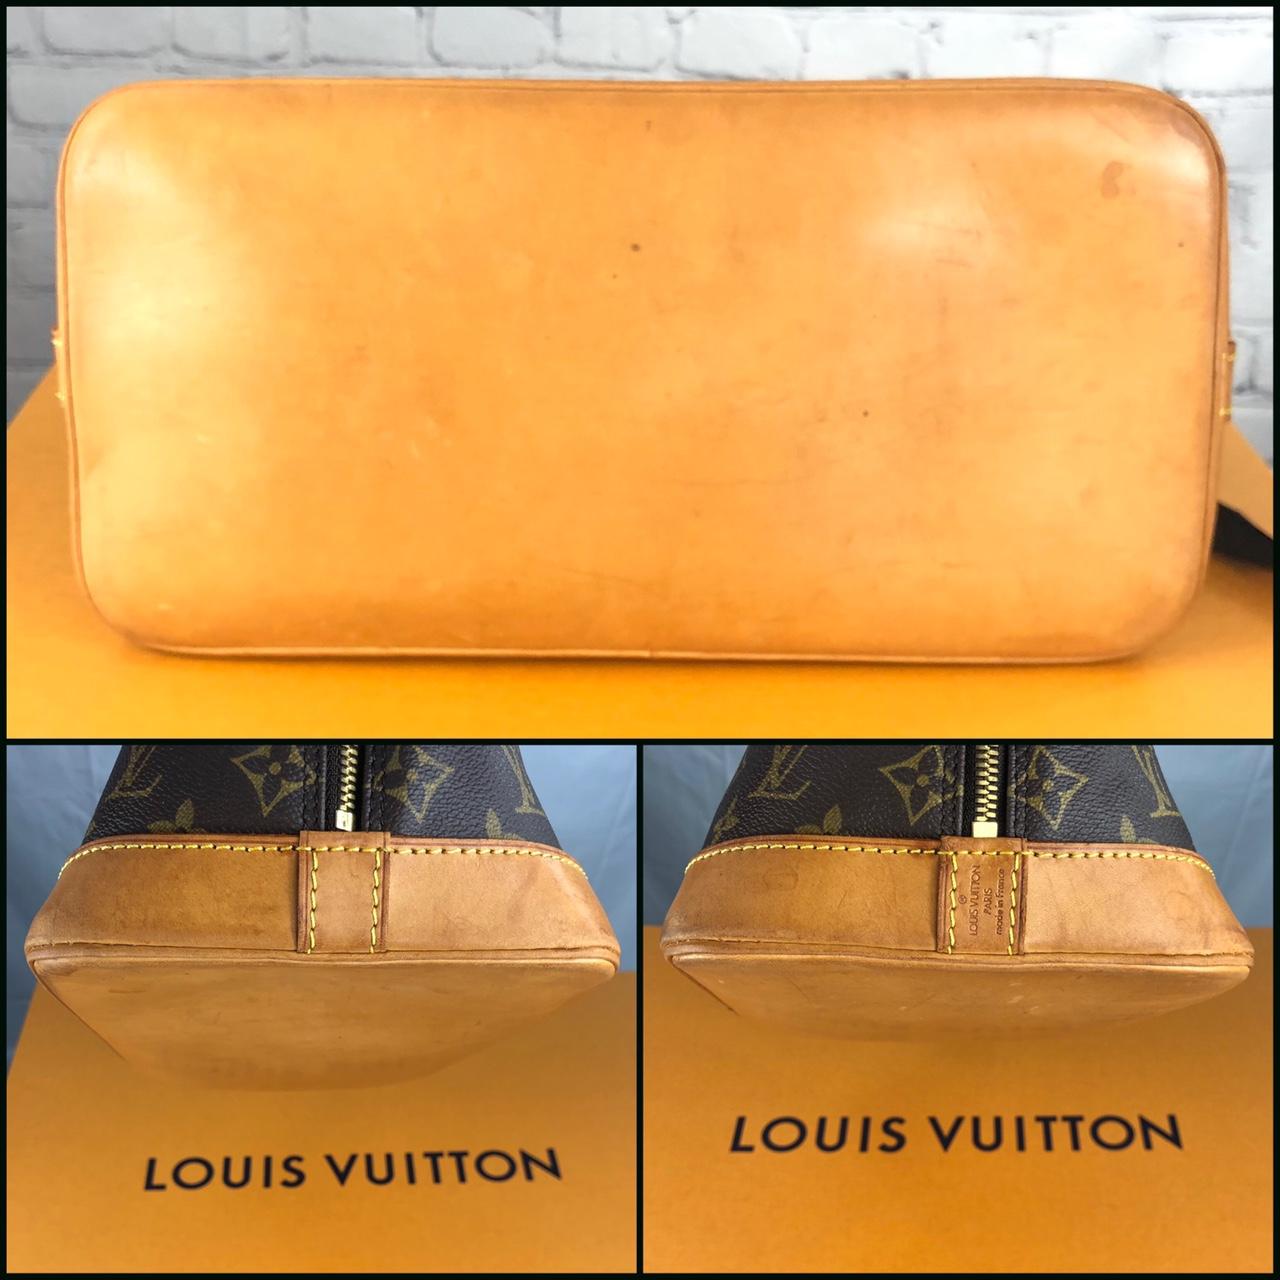 This is a brand new Louis Vuitton Vachetta crop top - Depop